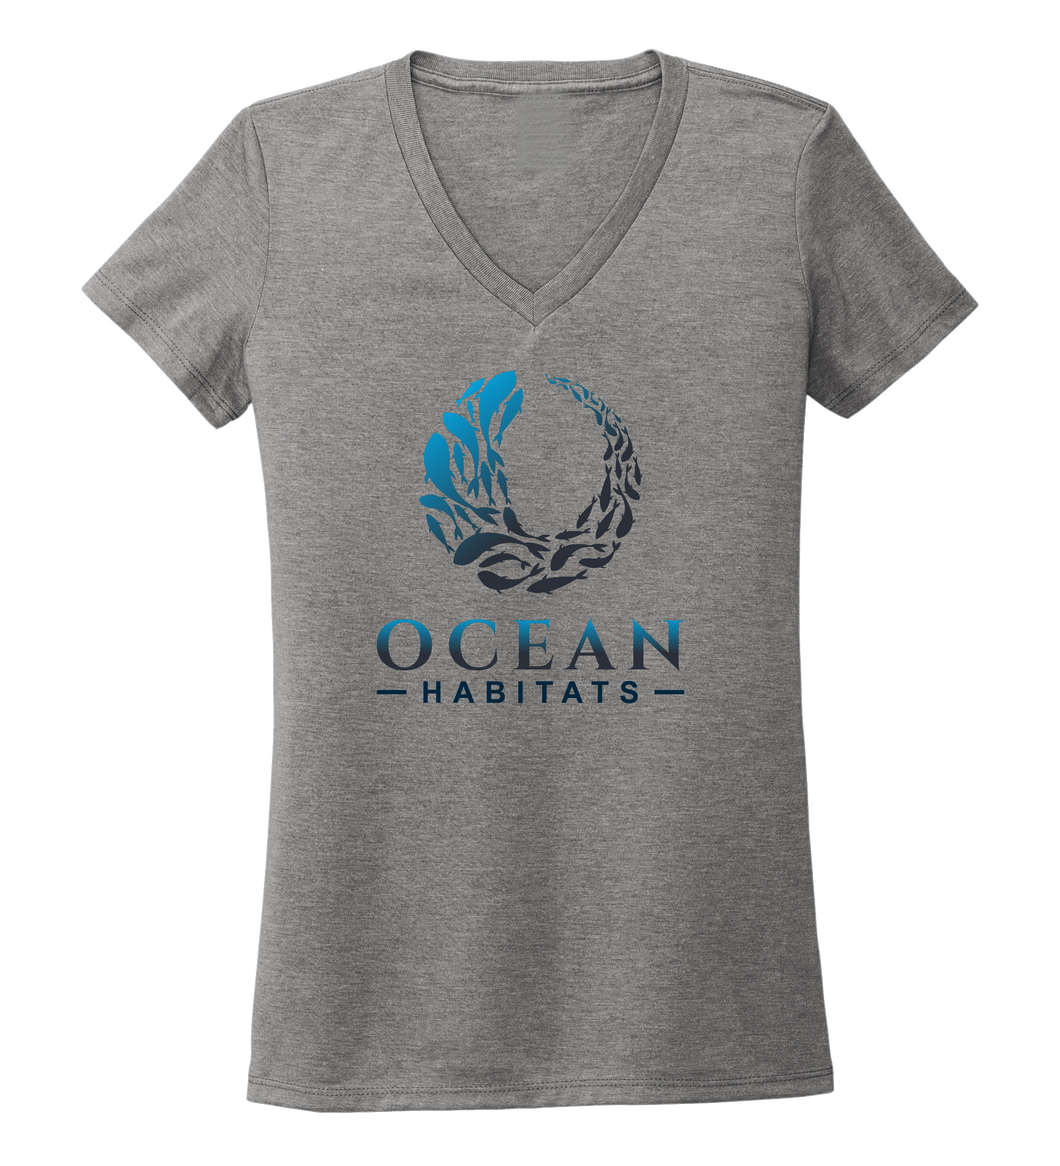 Ocean Habitats - Women's V-neck T-shirt in Oyster Grey